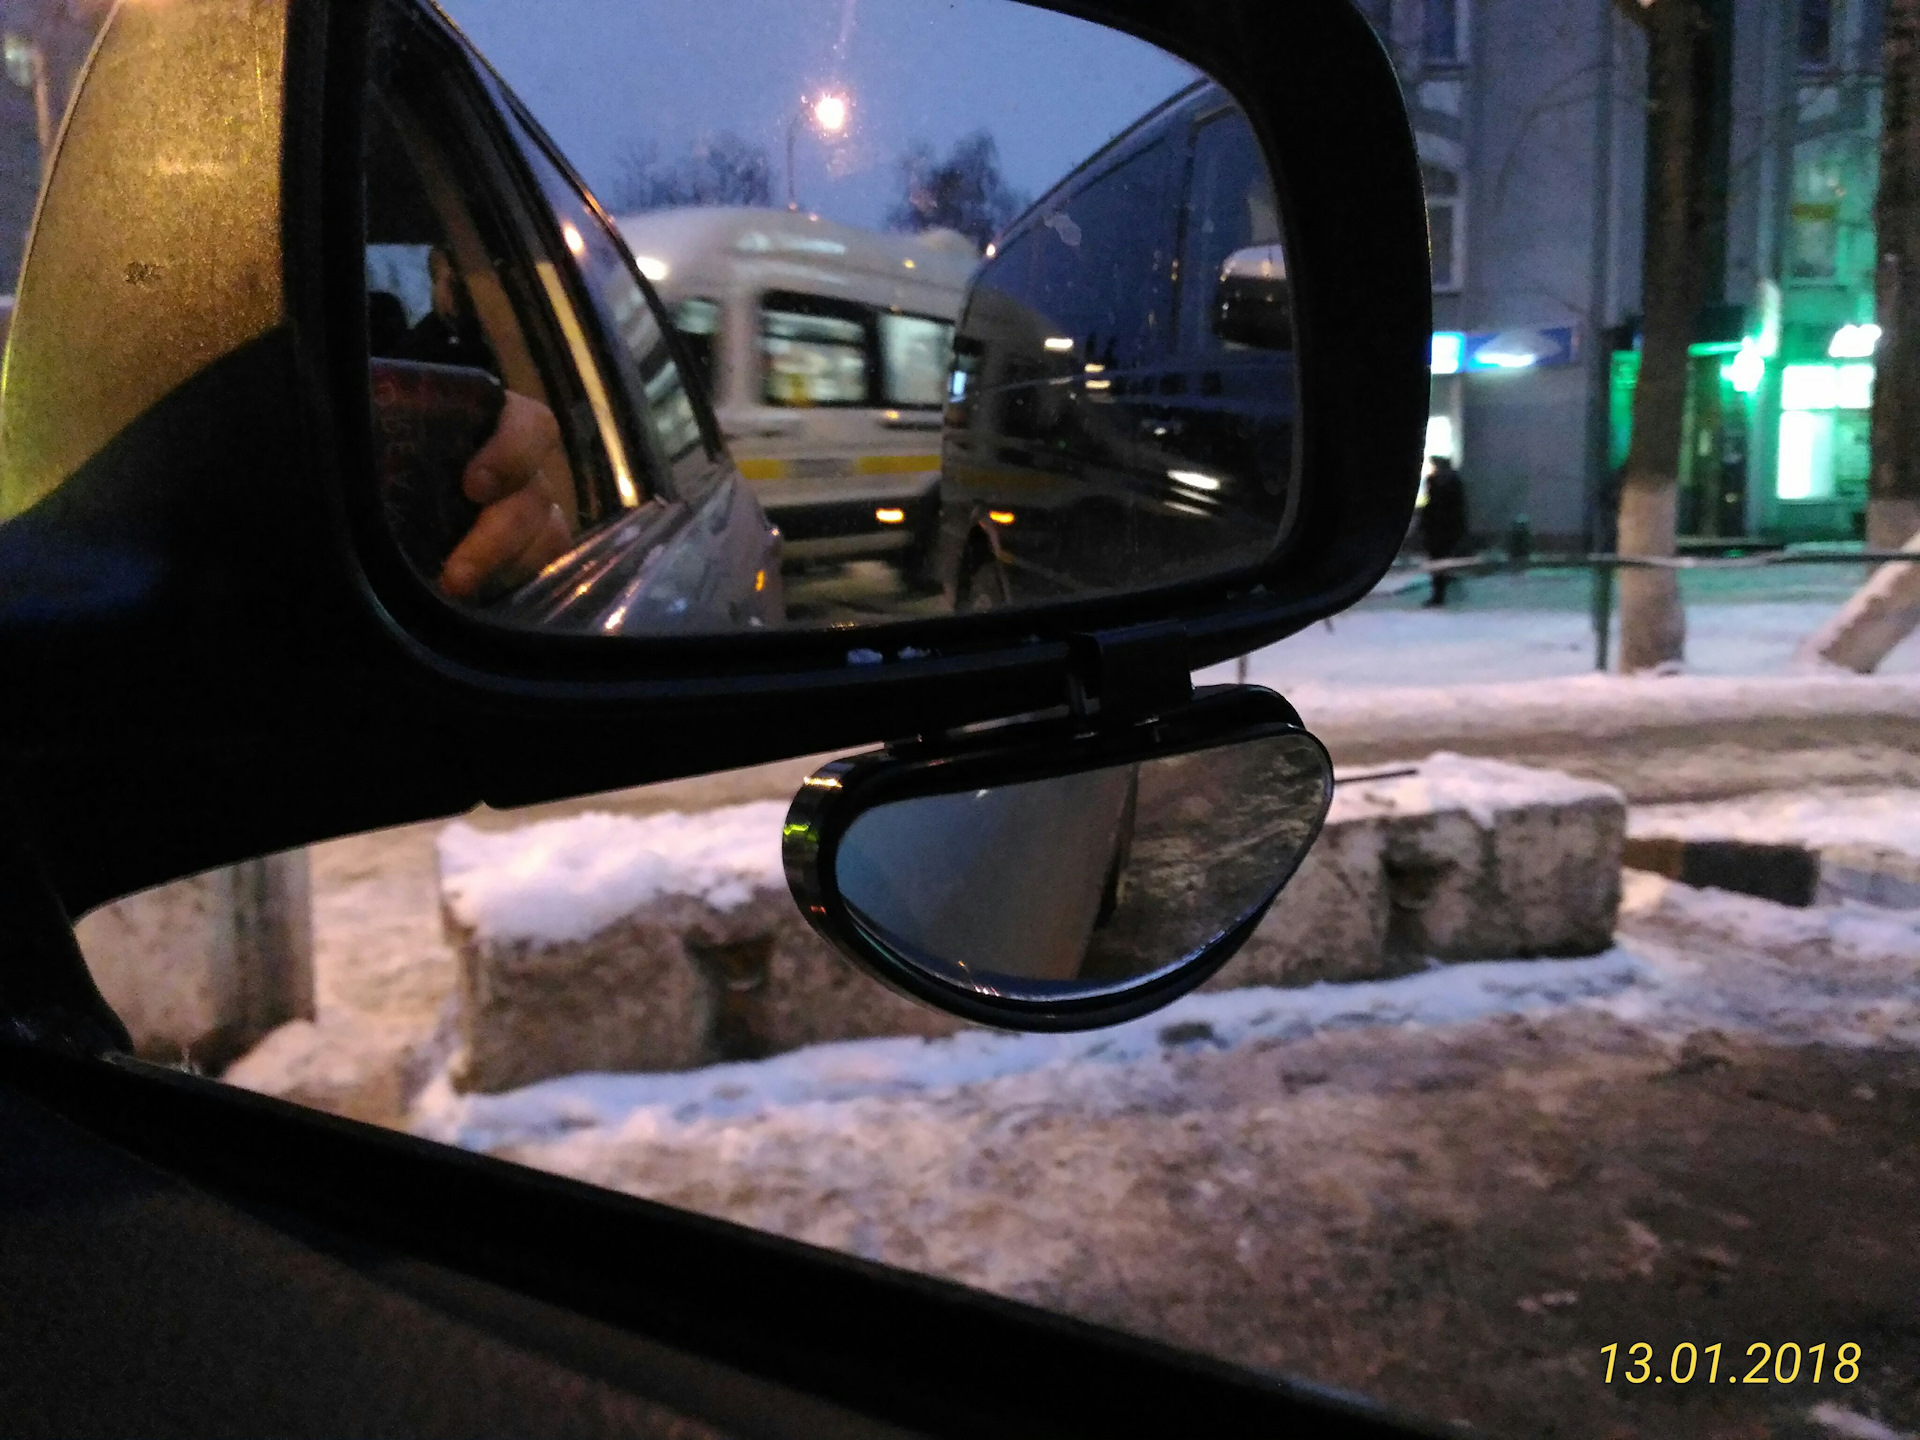 Зеркало снизу. Доп зеркала на авто. Доп зеркало снизу основного на авто. Astra установка дополнительных зеркал.